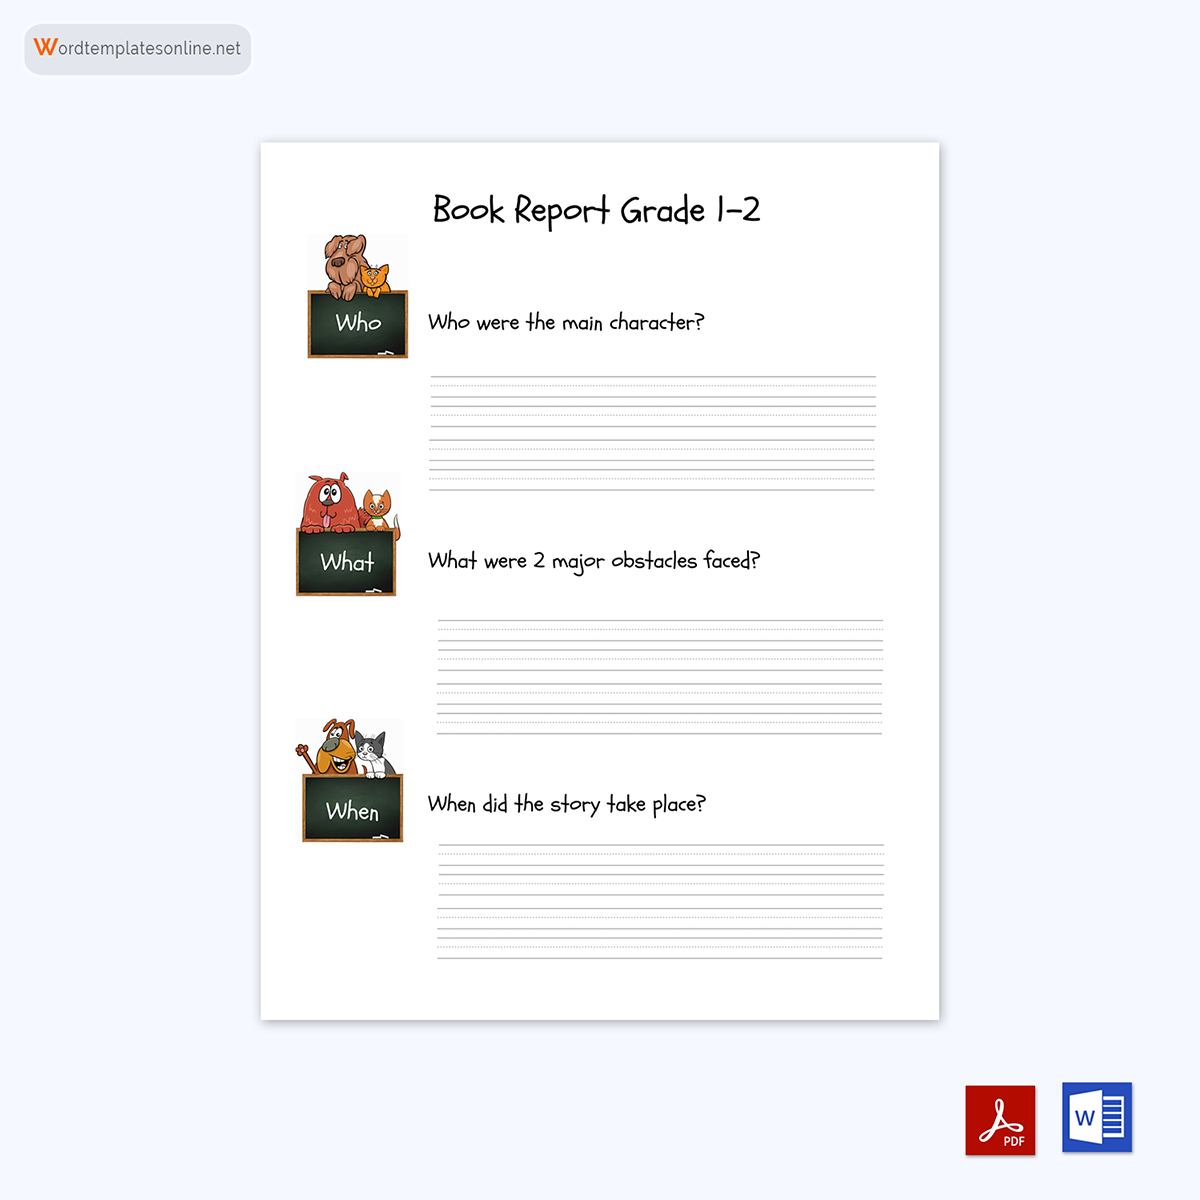 Sample Book Report Format